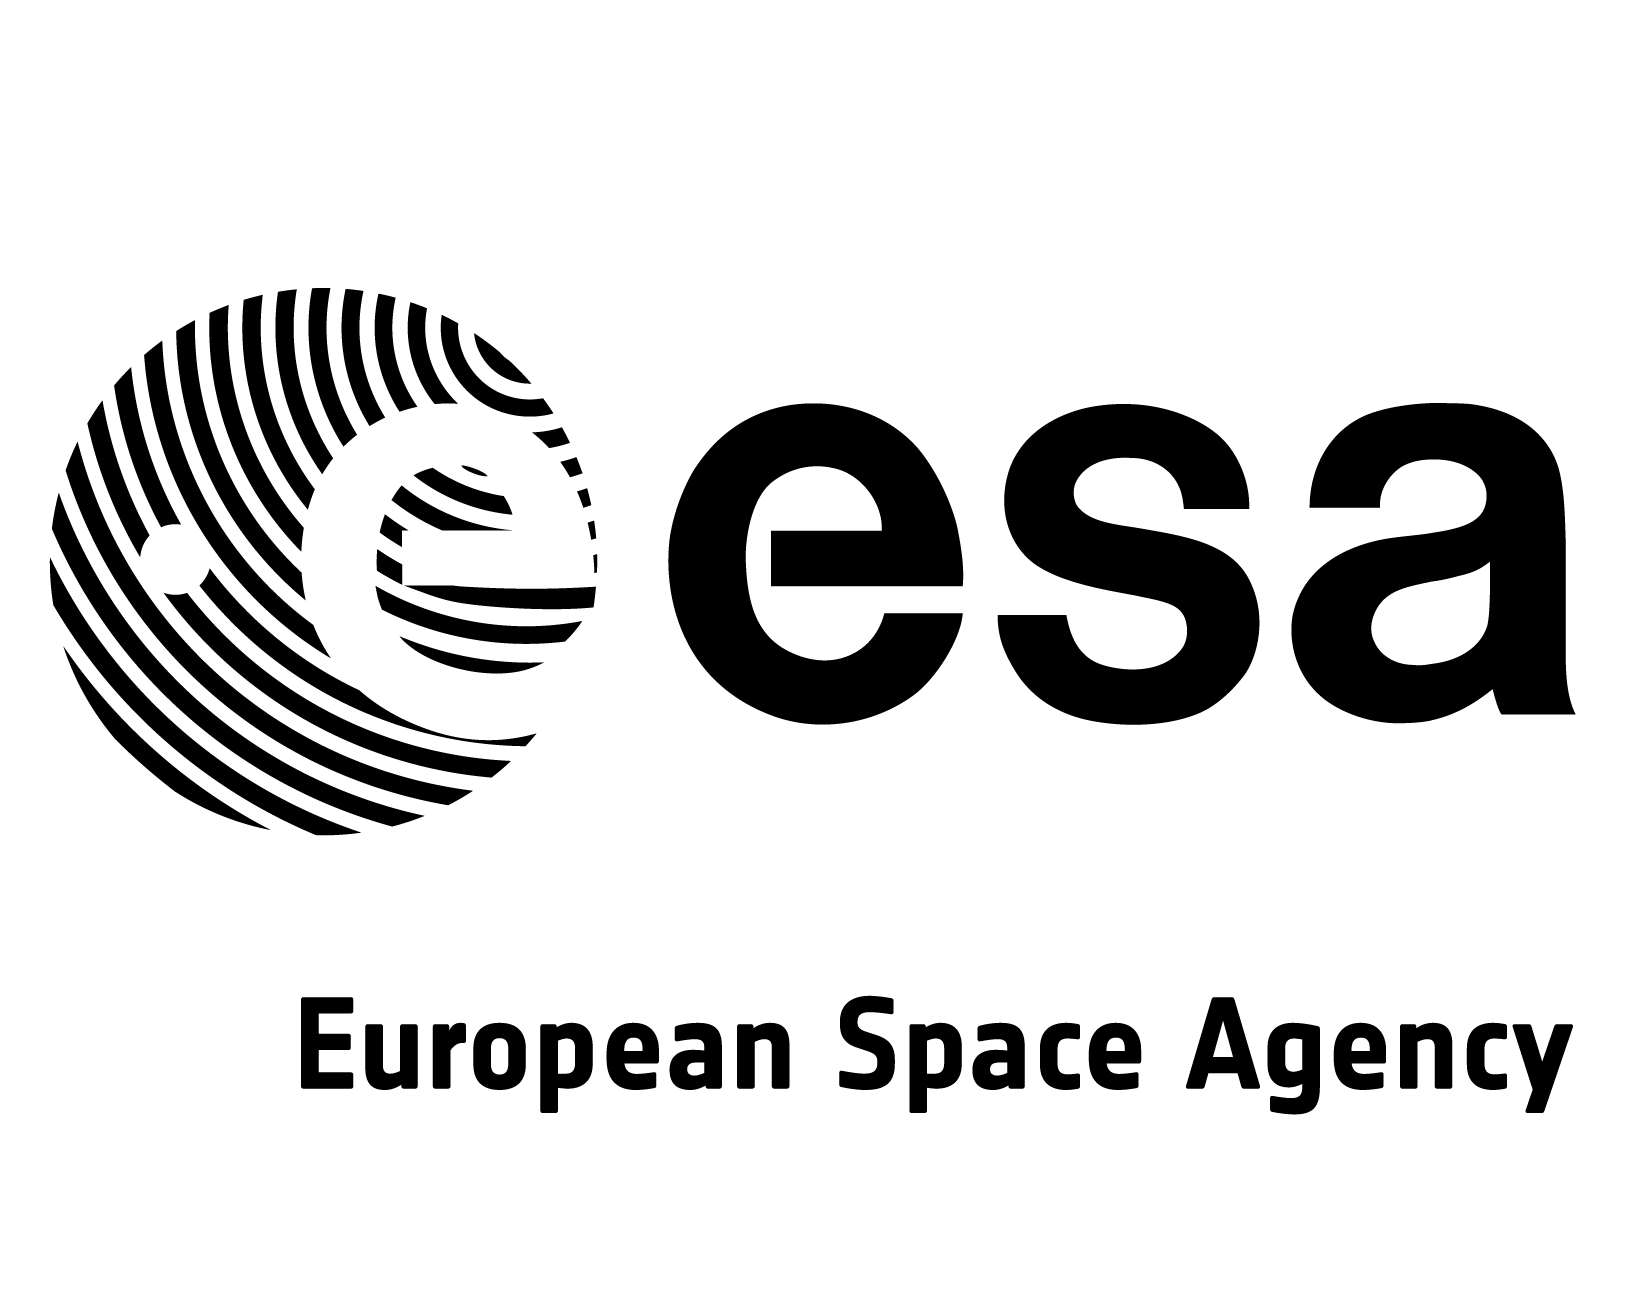 ESA logo.png